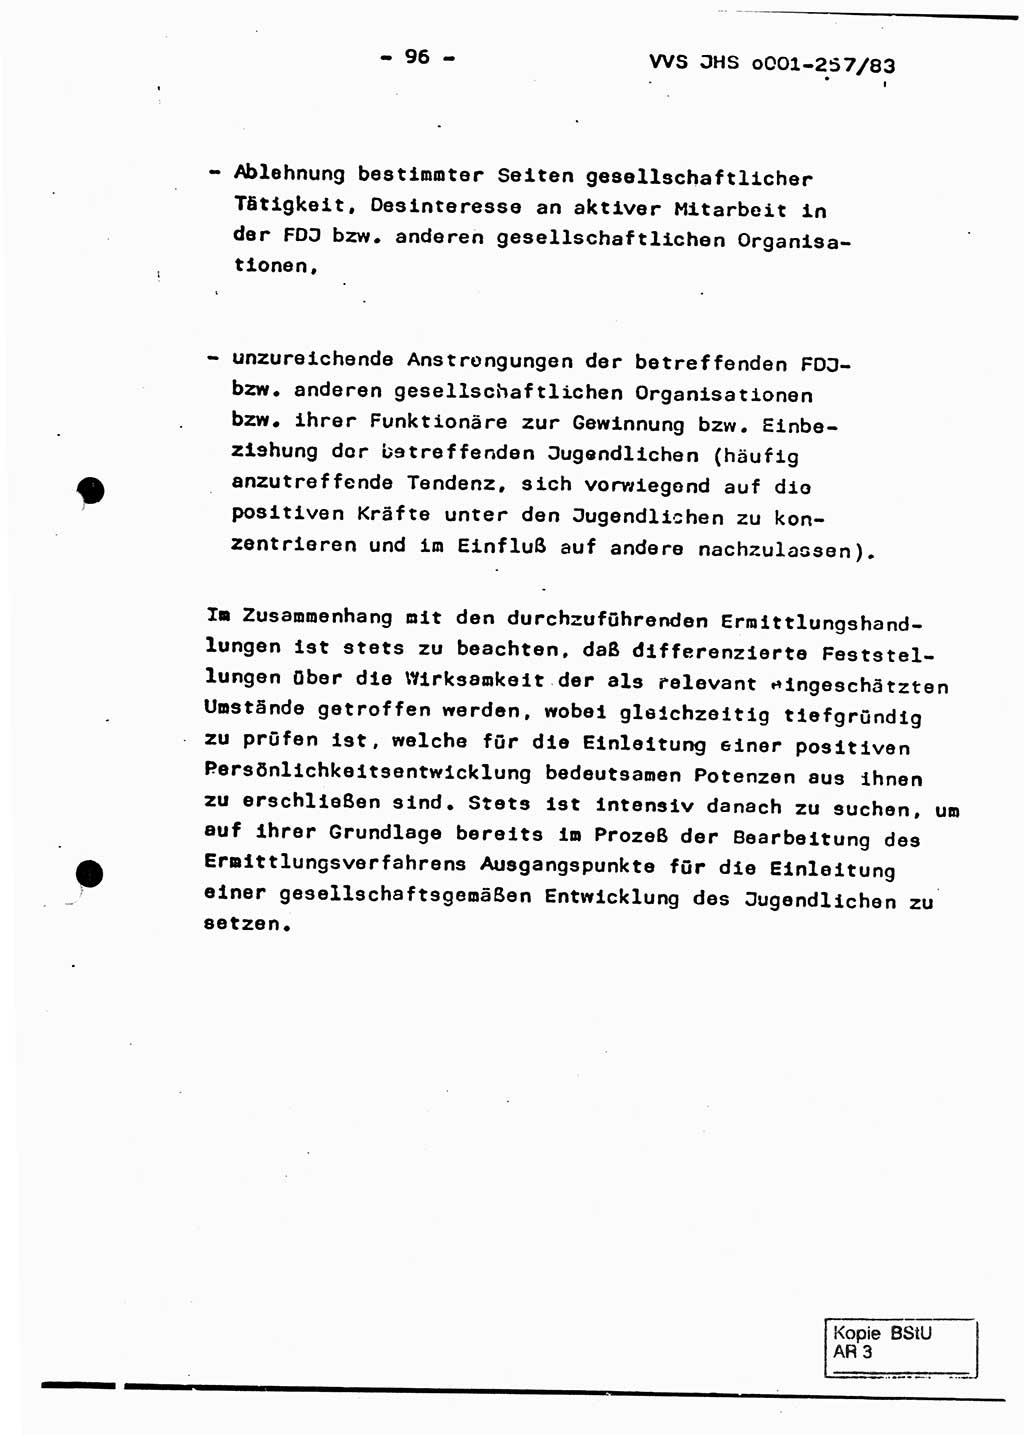 Dissertation, Oberst Helmut Lubas (BV Mdg.), Oberstleutnant Manfred Eschberger (HA IX), Oberleutnant Hans-Jürgen Ludwig (JHS), Ministerium für Staatssicherheit (MfS) [Deutsche Demokratische Republik (DDR)], Juristische Hochschule (JHS), Vertrauliche Verschlußsache (VVS) o001-257/83, Potsdam 1983, Seite 96 (Diss. MfS DDR JHS VVS o001-257/83 1983, S. 96)